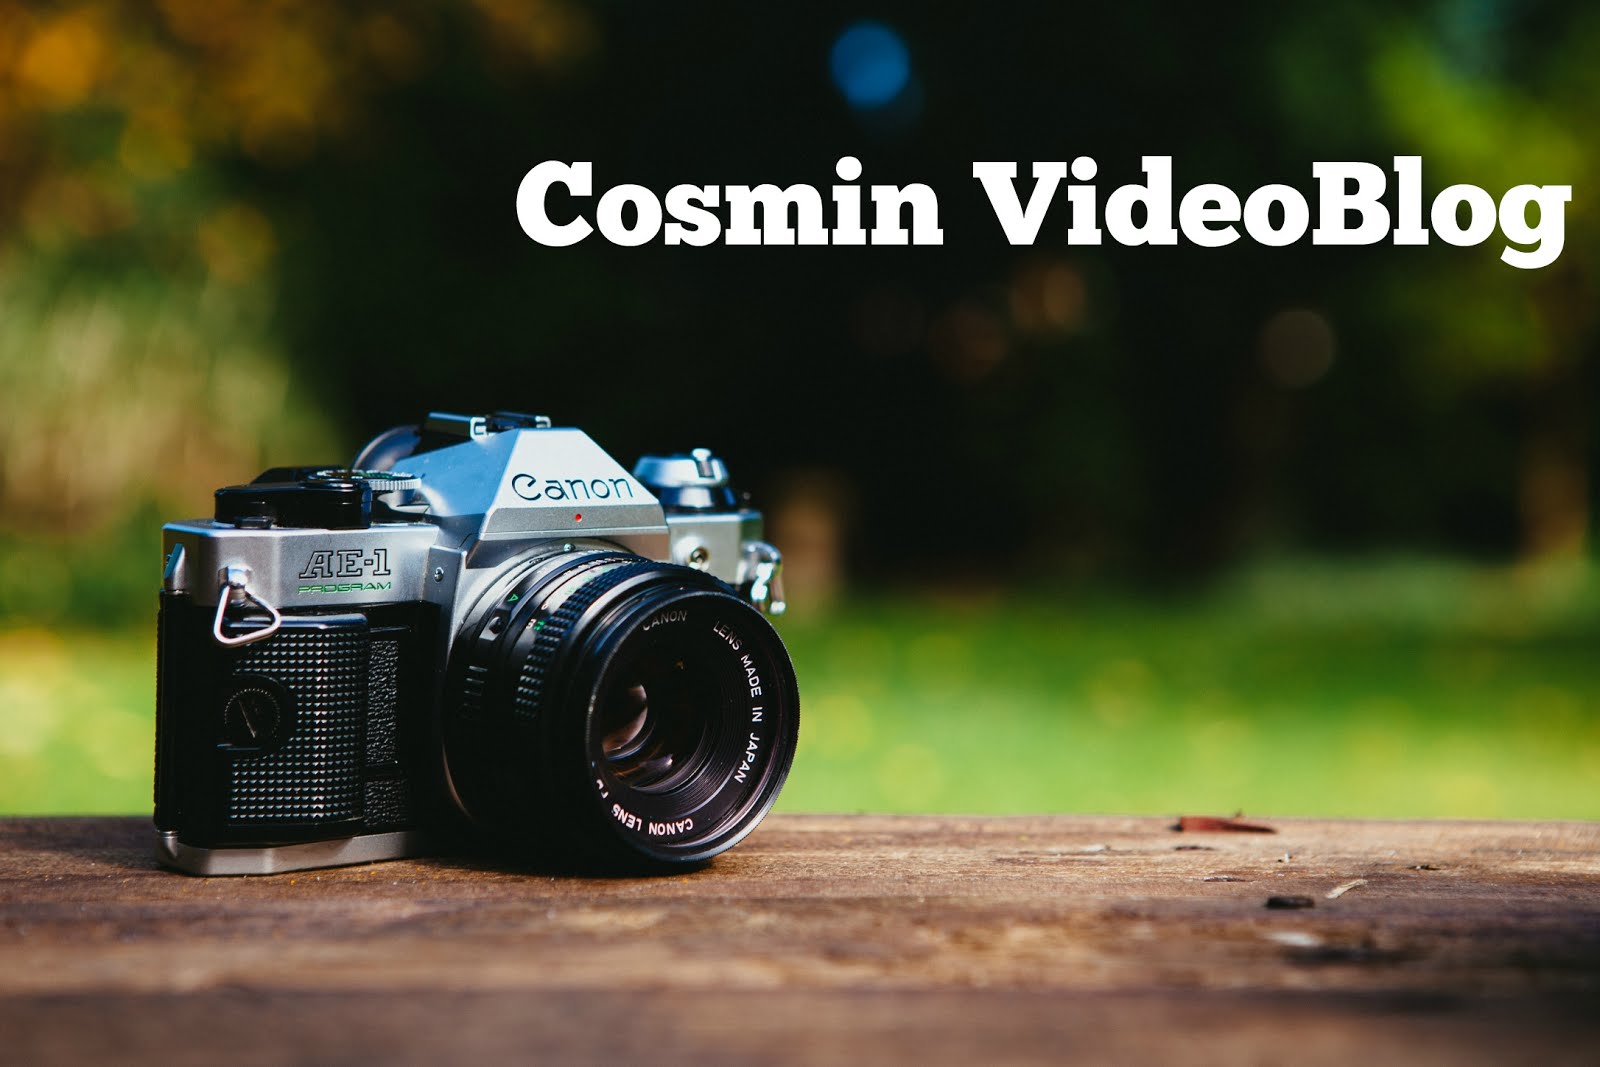                   Cosmin VideoBlog